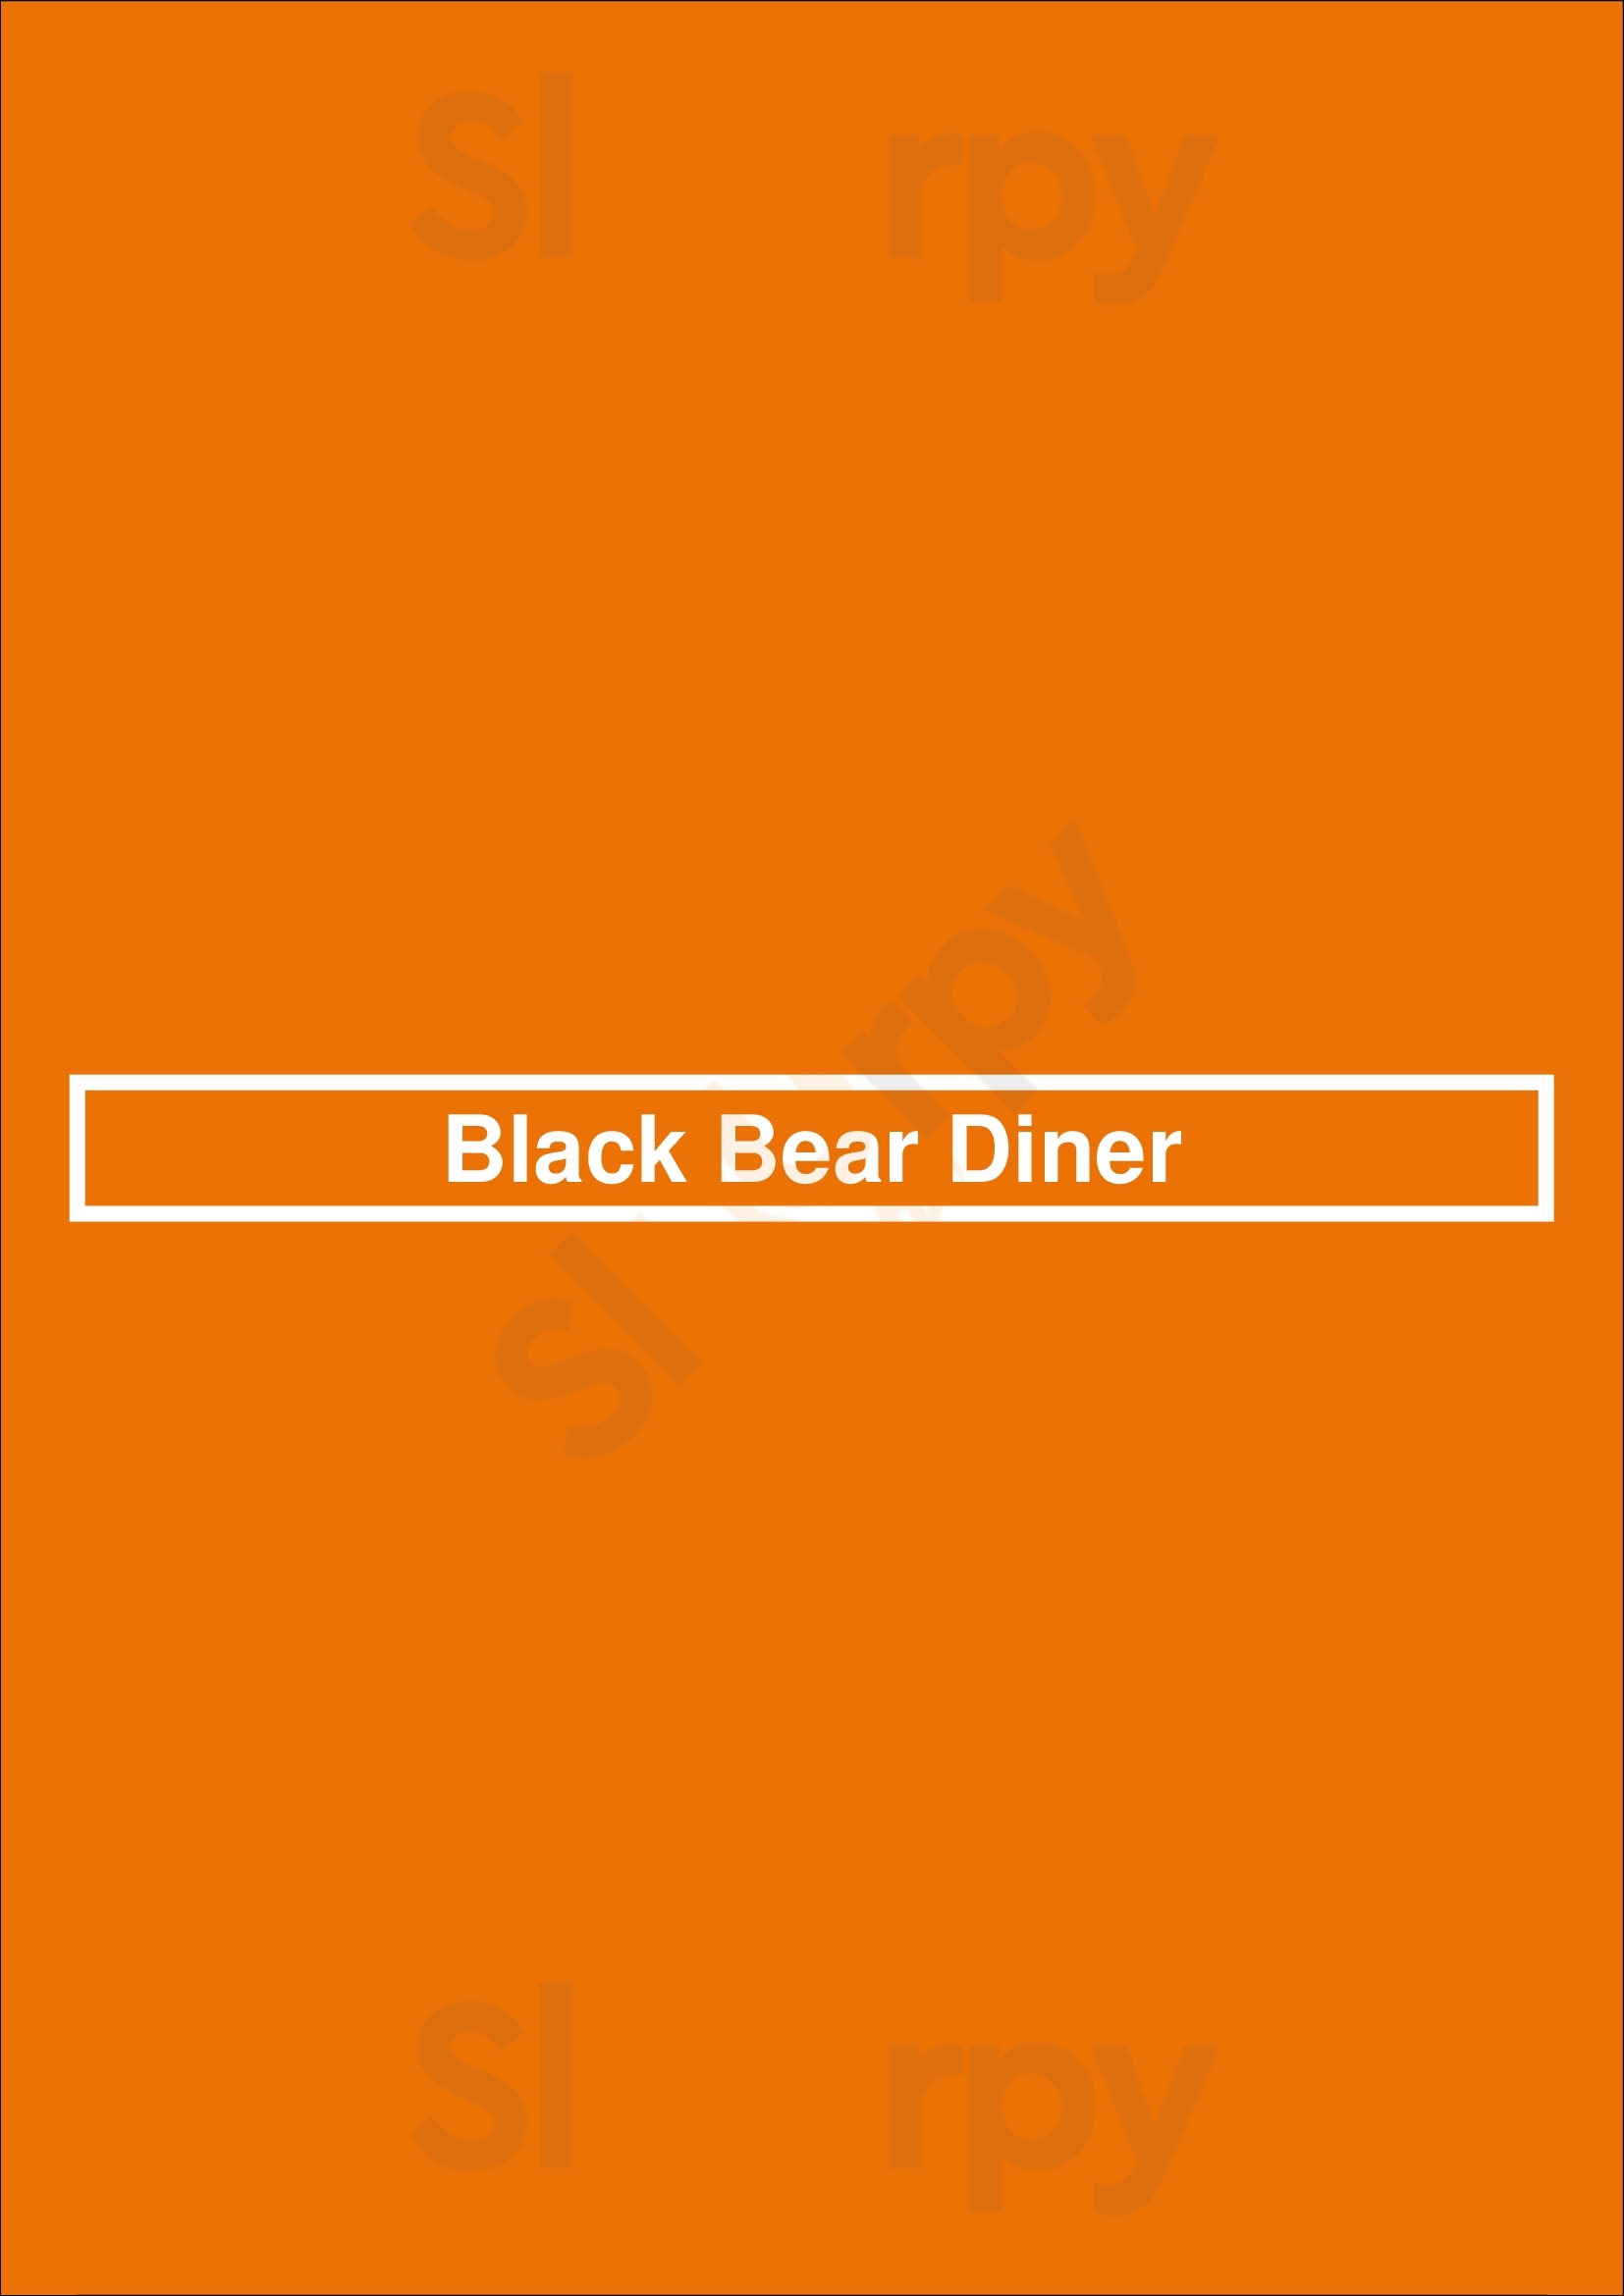 Black Bear Diner Tucson Menu - 1